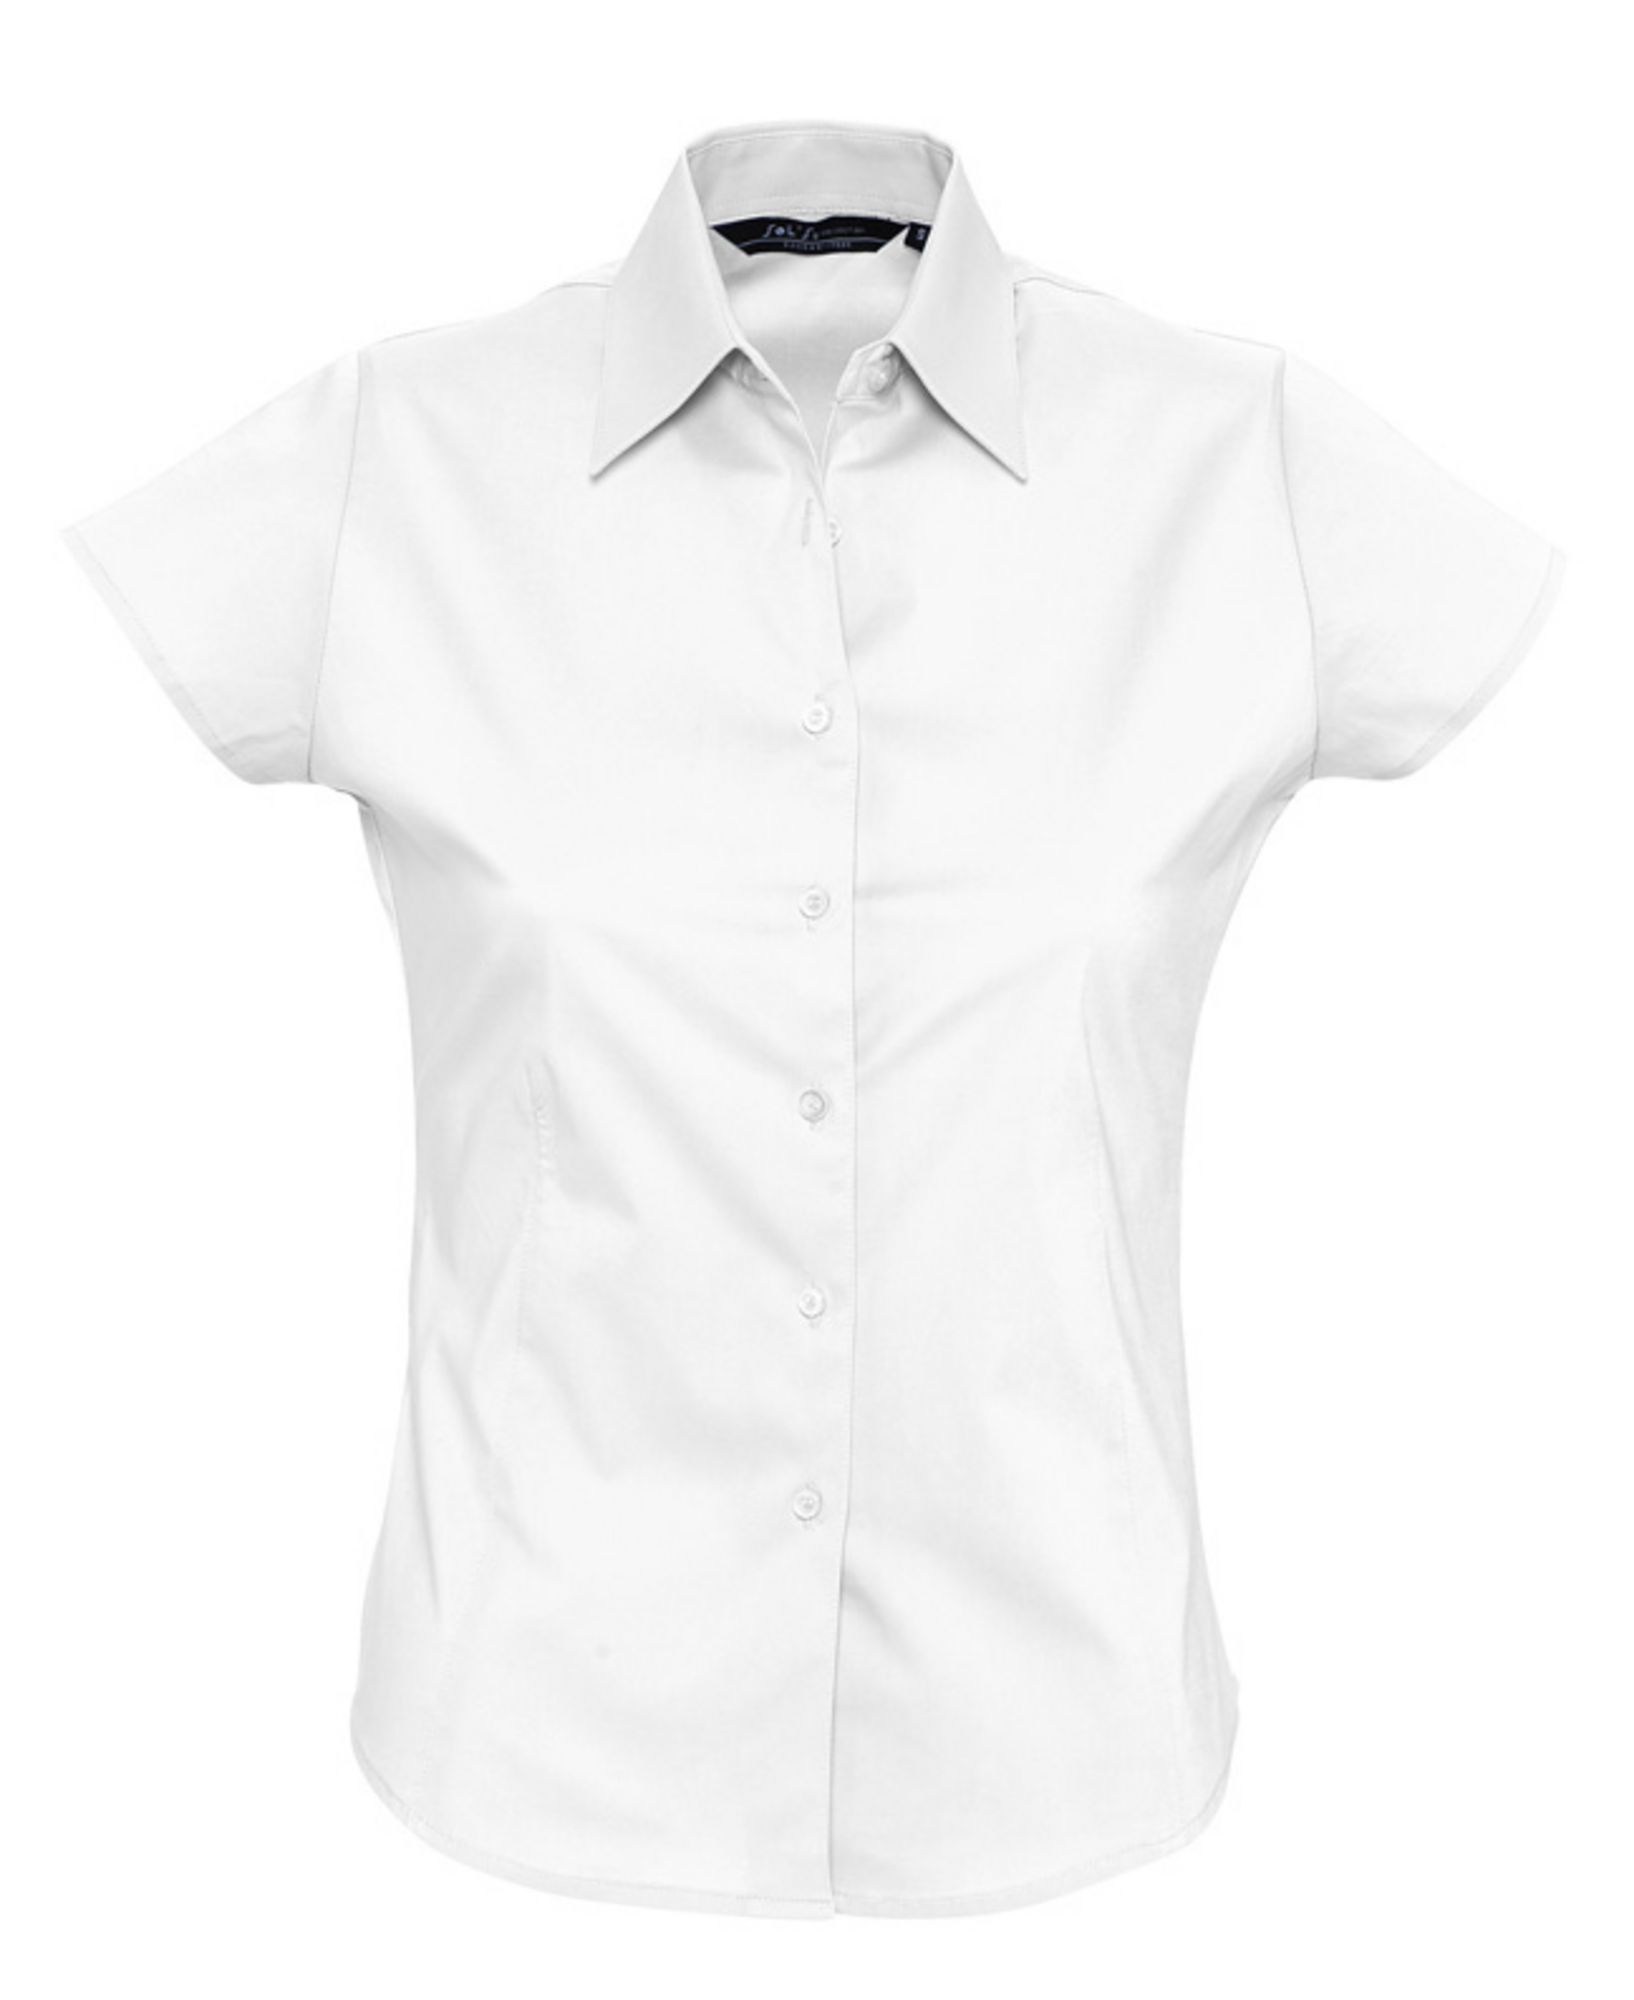 рубашка с коротким рукавом женская валберис